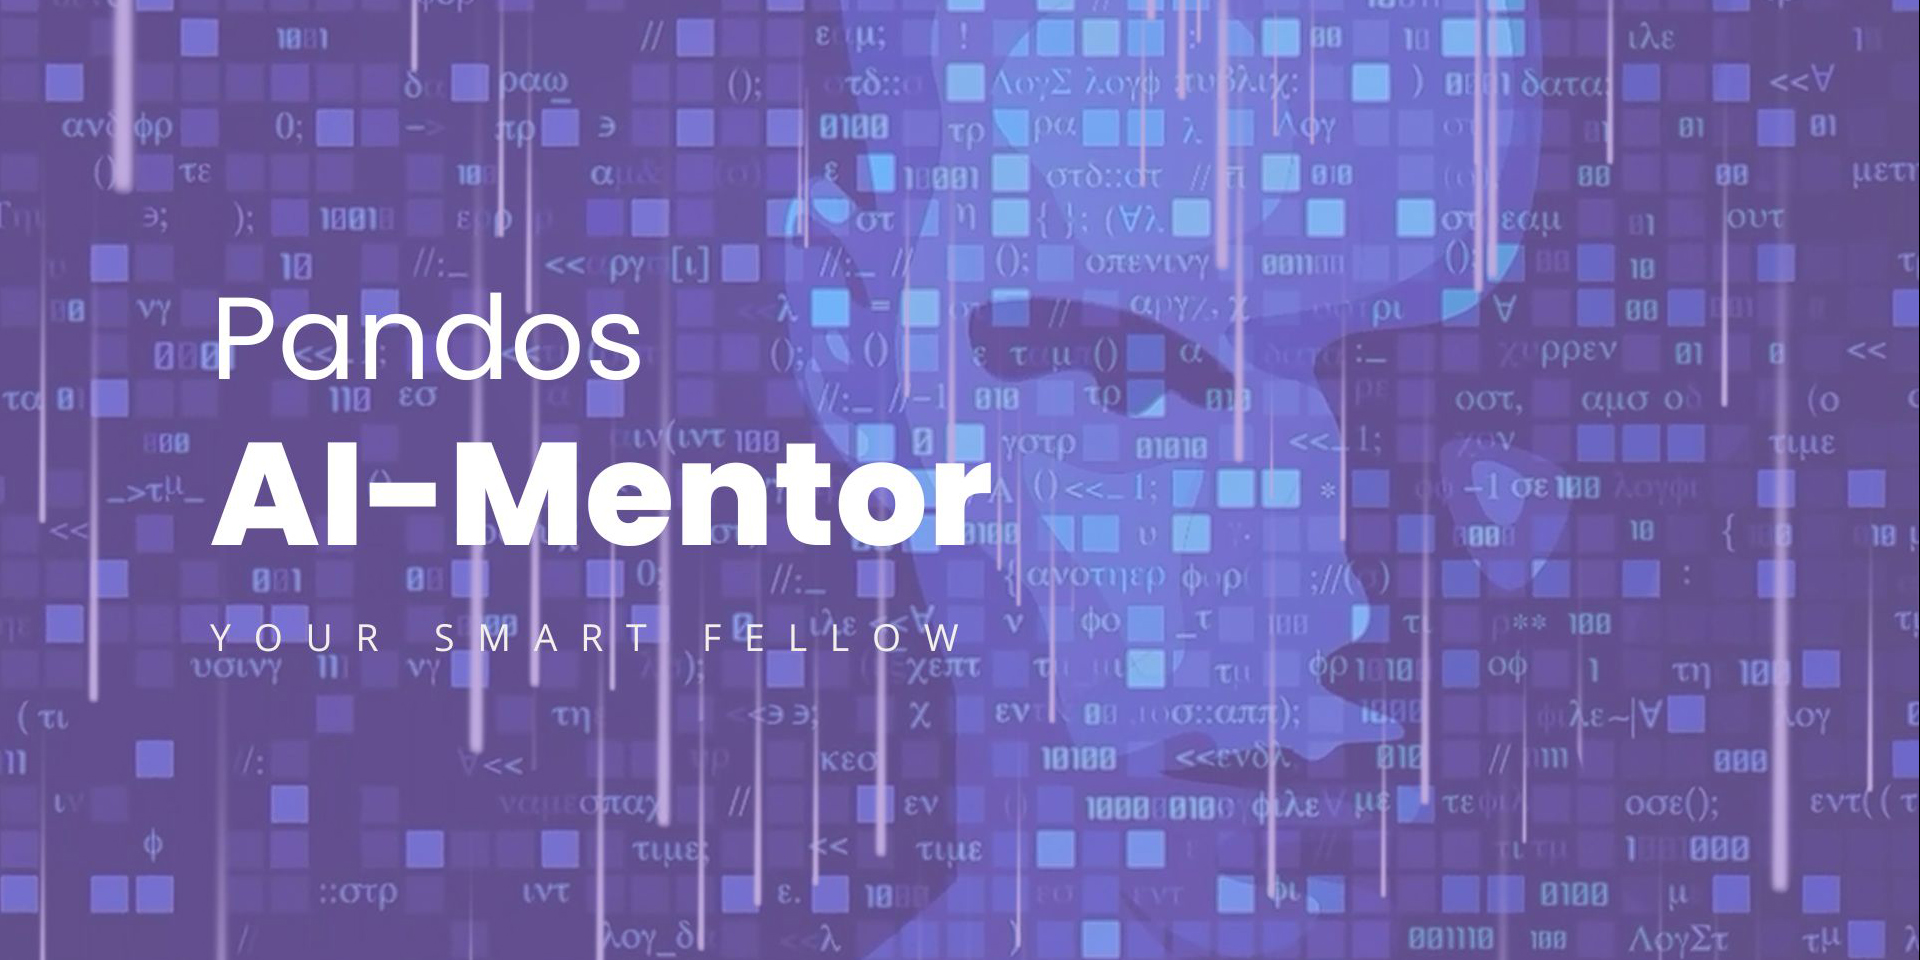 Pandos AI-Mentor for business